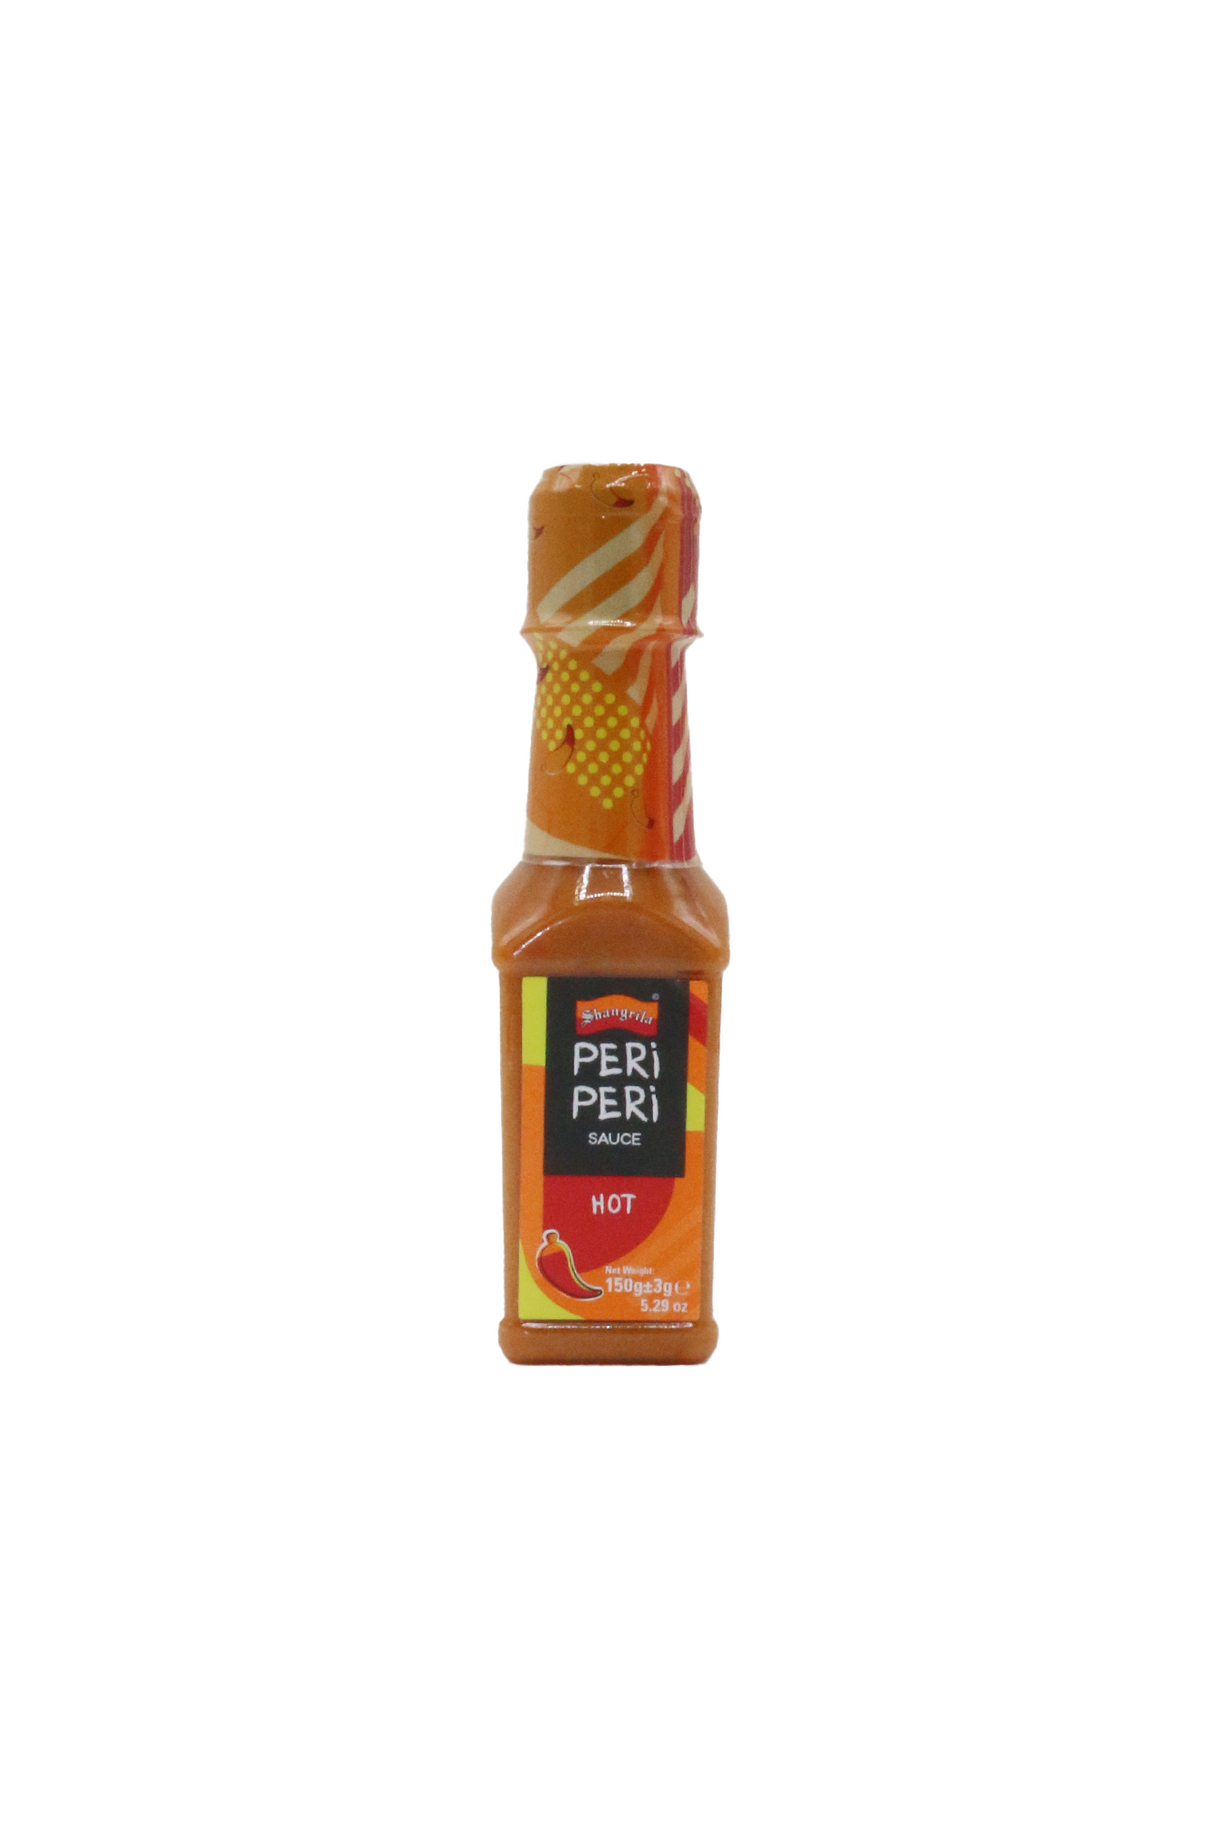 shangrila peri peri hot sauce 145g